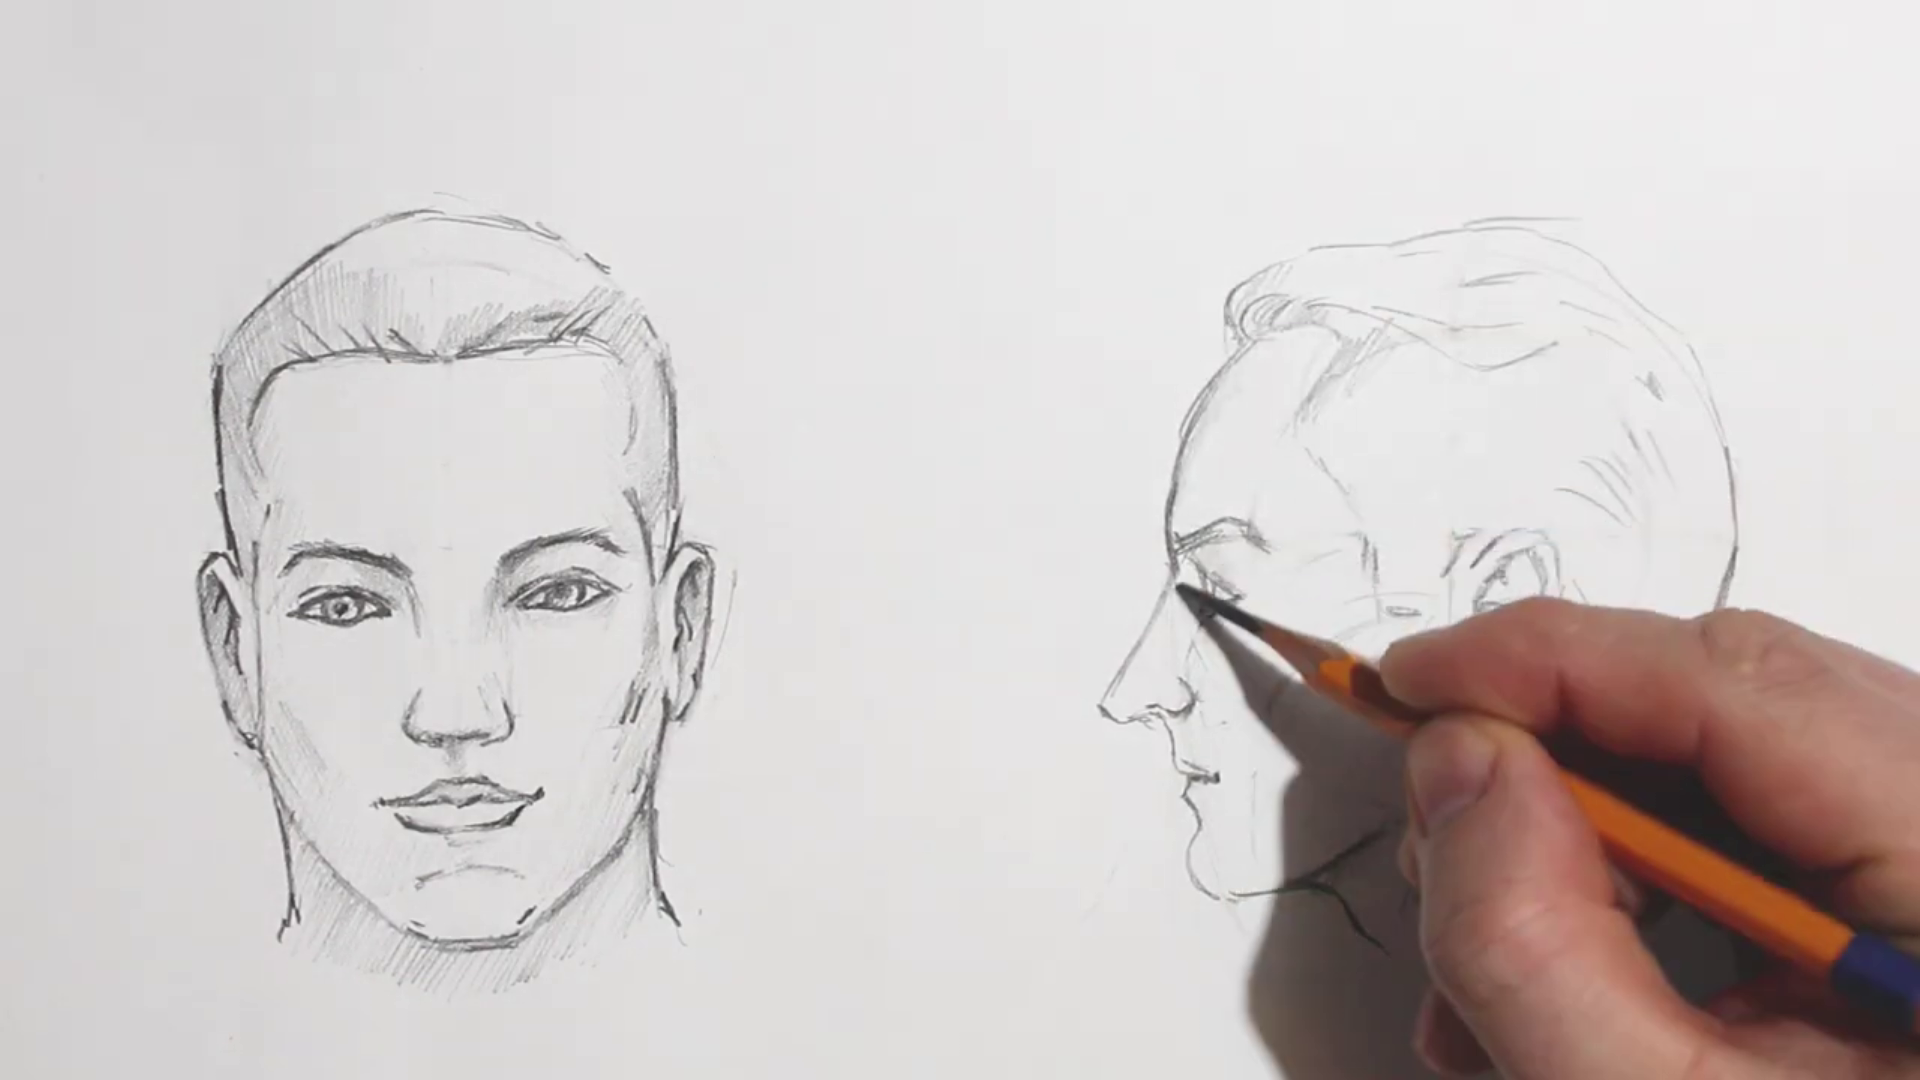 Lekcja rysunku (15) - rysunek głowy